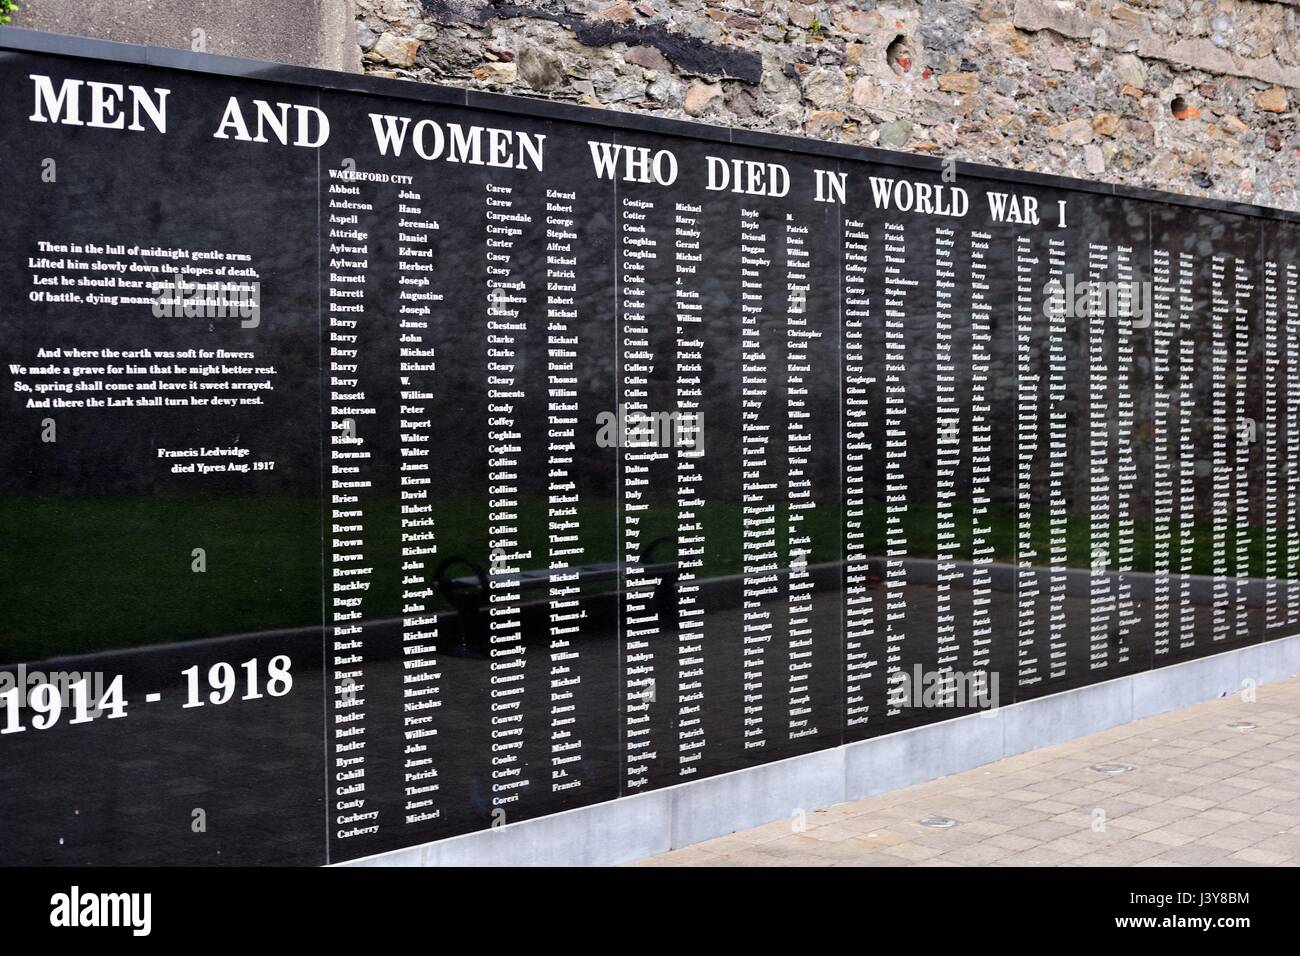 Un monument commémoratif de la Première Guerre mondiale pour les hommes et les femmes du comté de Waterford construit à la base de Château de Dungarvan Dungarvan, dans l'Irlande. Banque D'Images